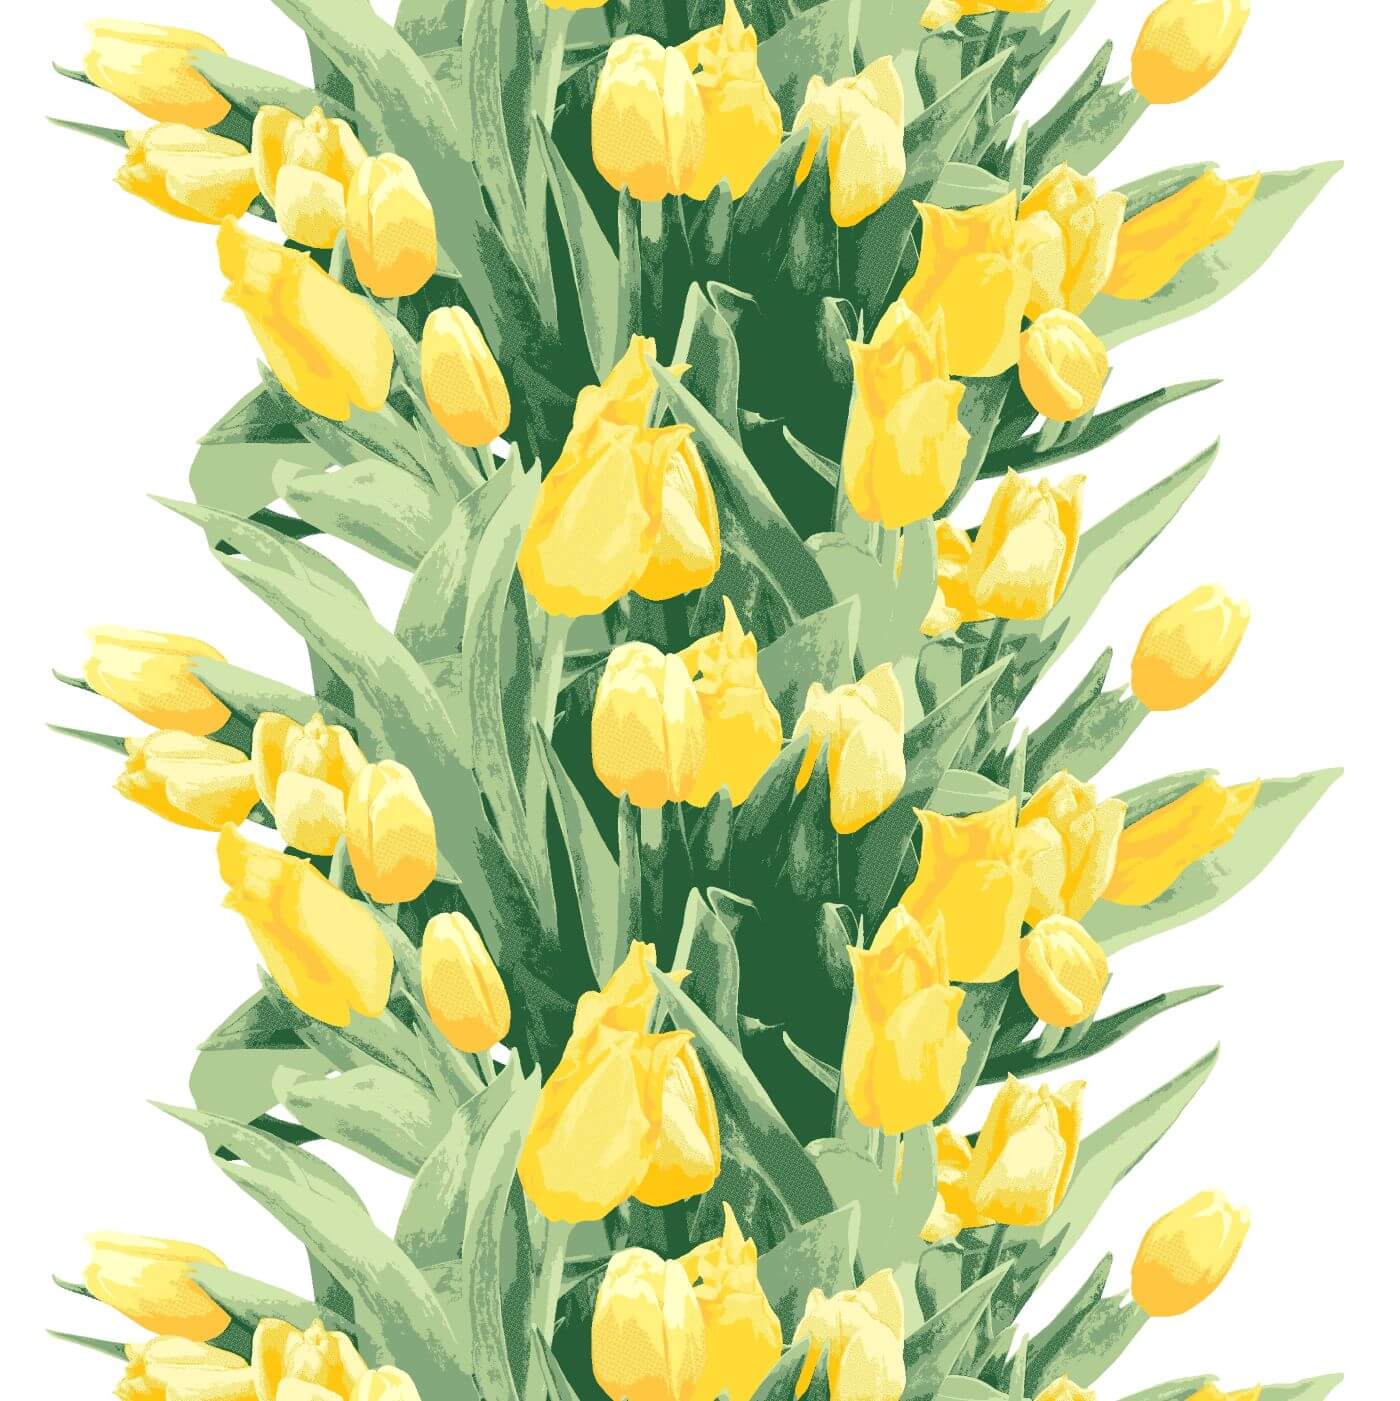 Zasłony w tulipany Pauliina. Fragment wzoru zasłony z tulipanami w żółte kwiaty i zielone liście na białym tle. Skandynawski design